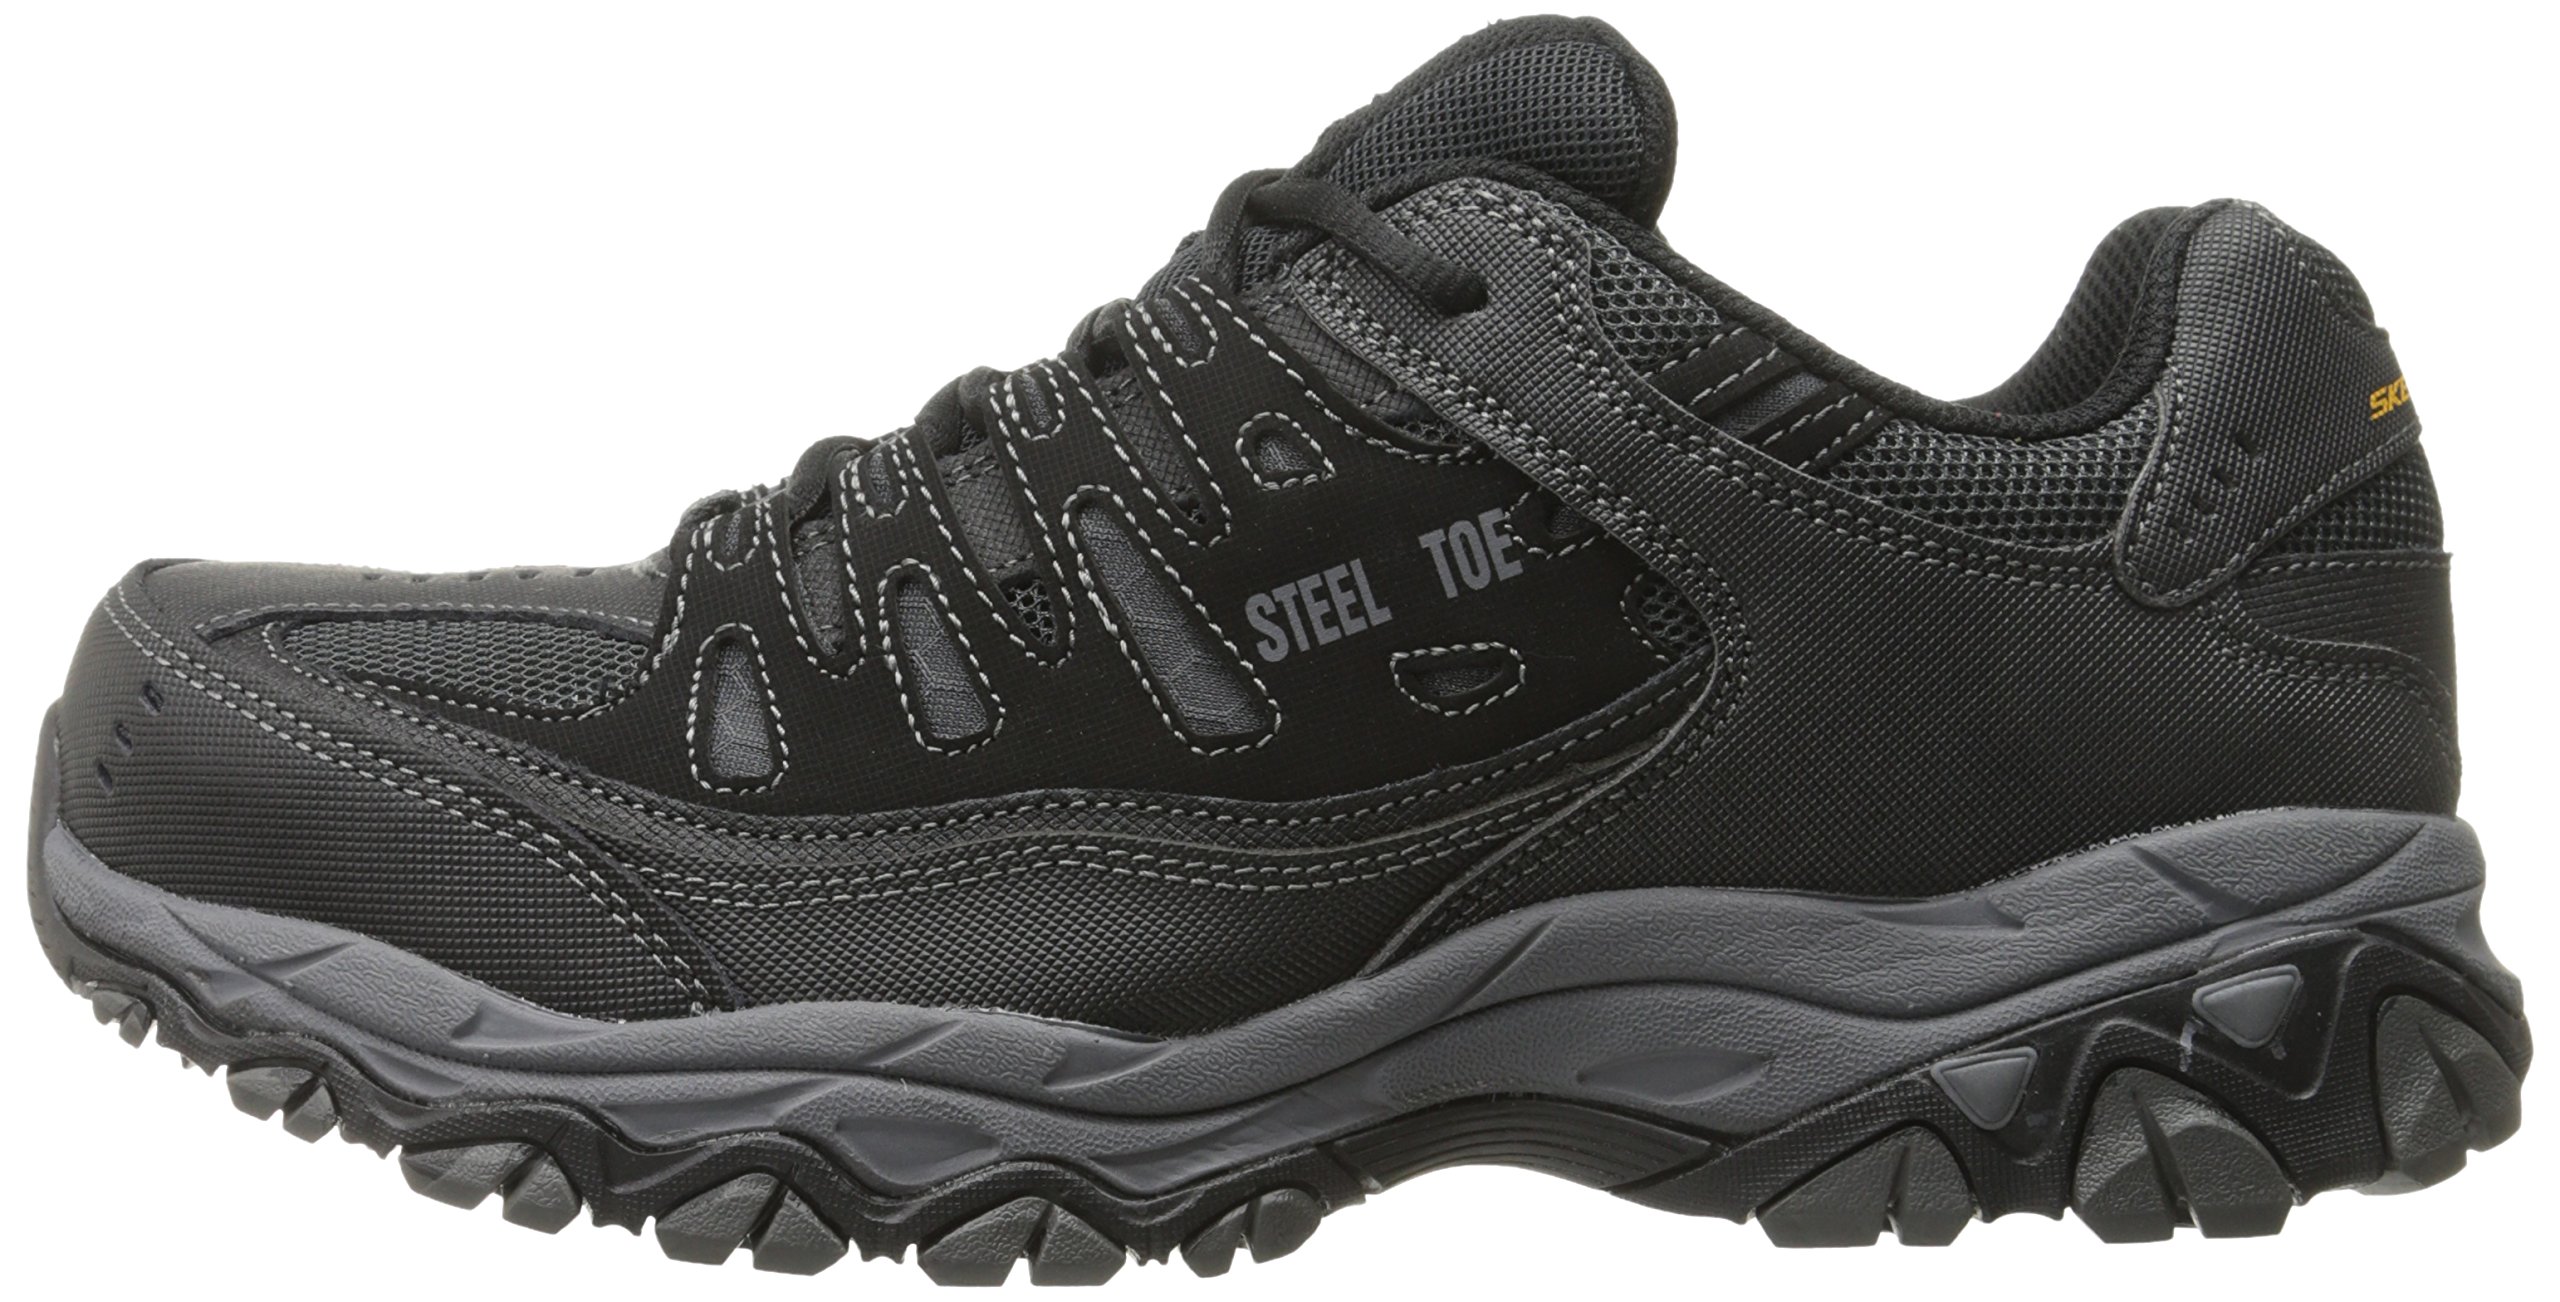 Skechers Men's Cankton Steel Toe Industrial Shoe, Black/Charcoal, 10.5 Wide